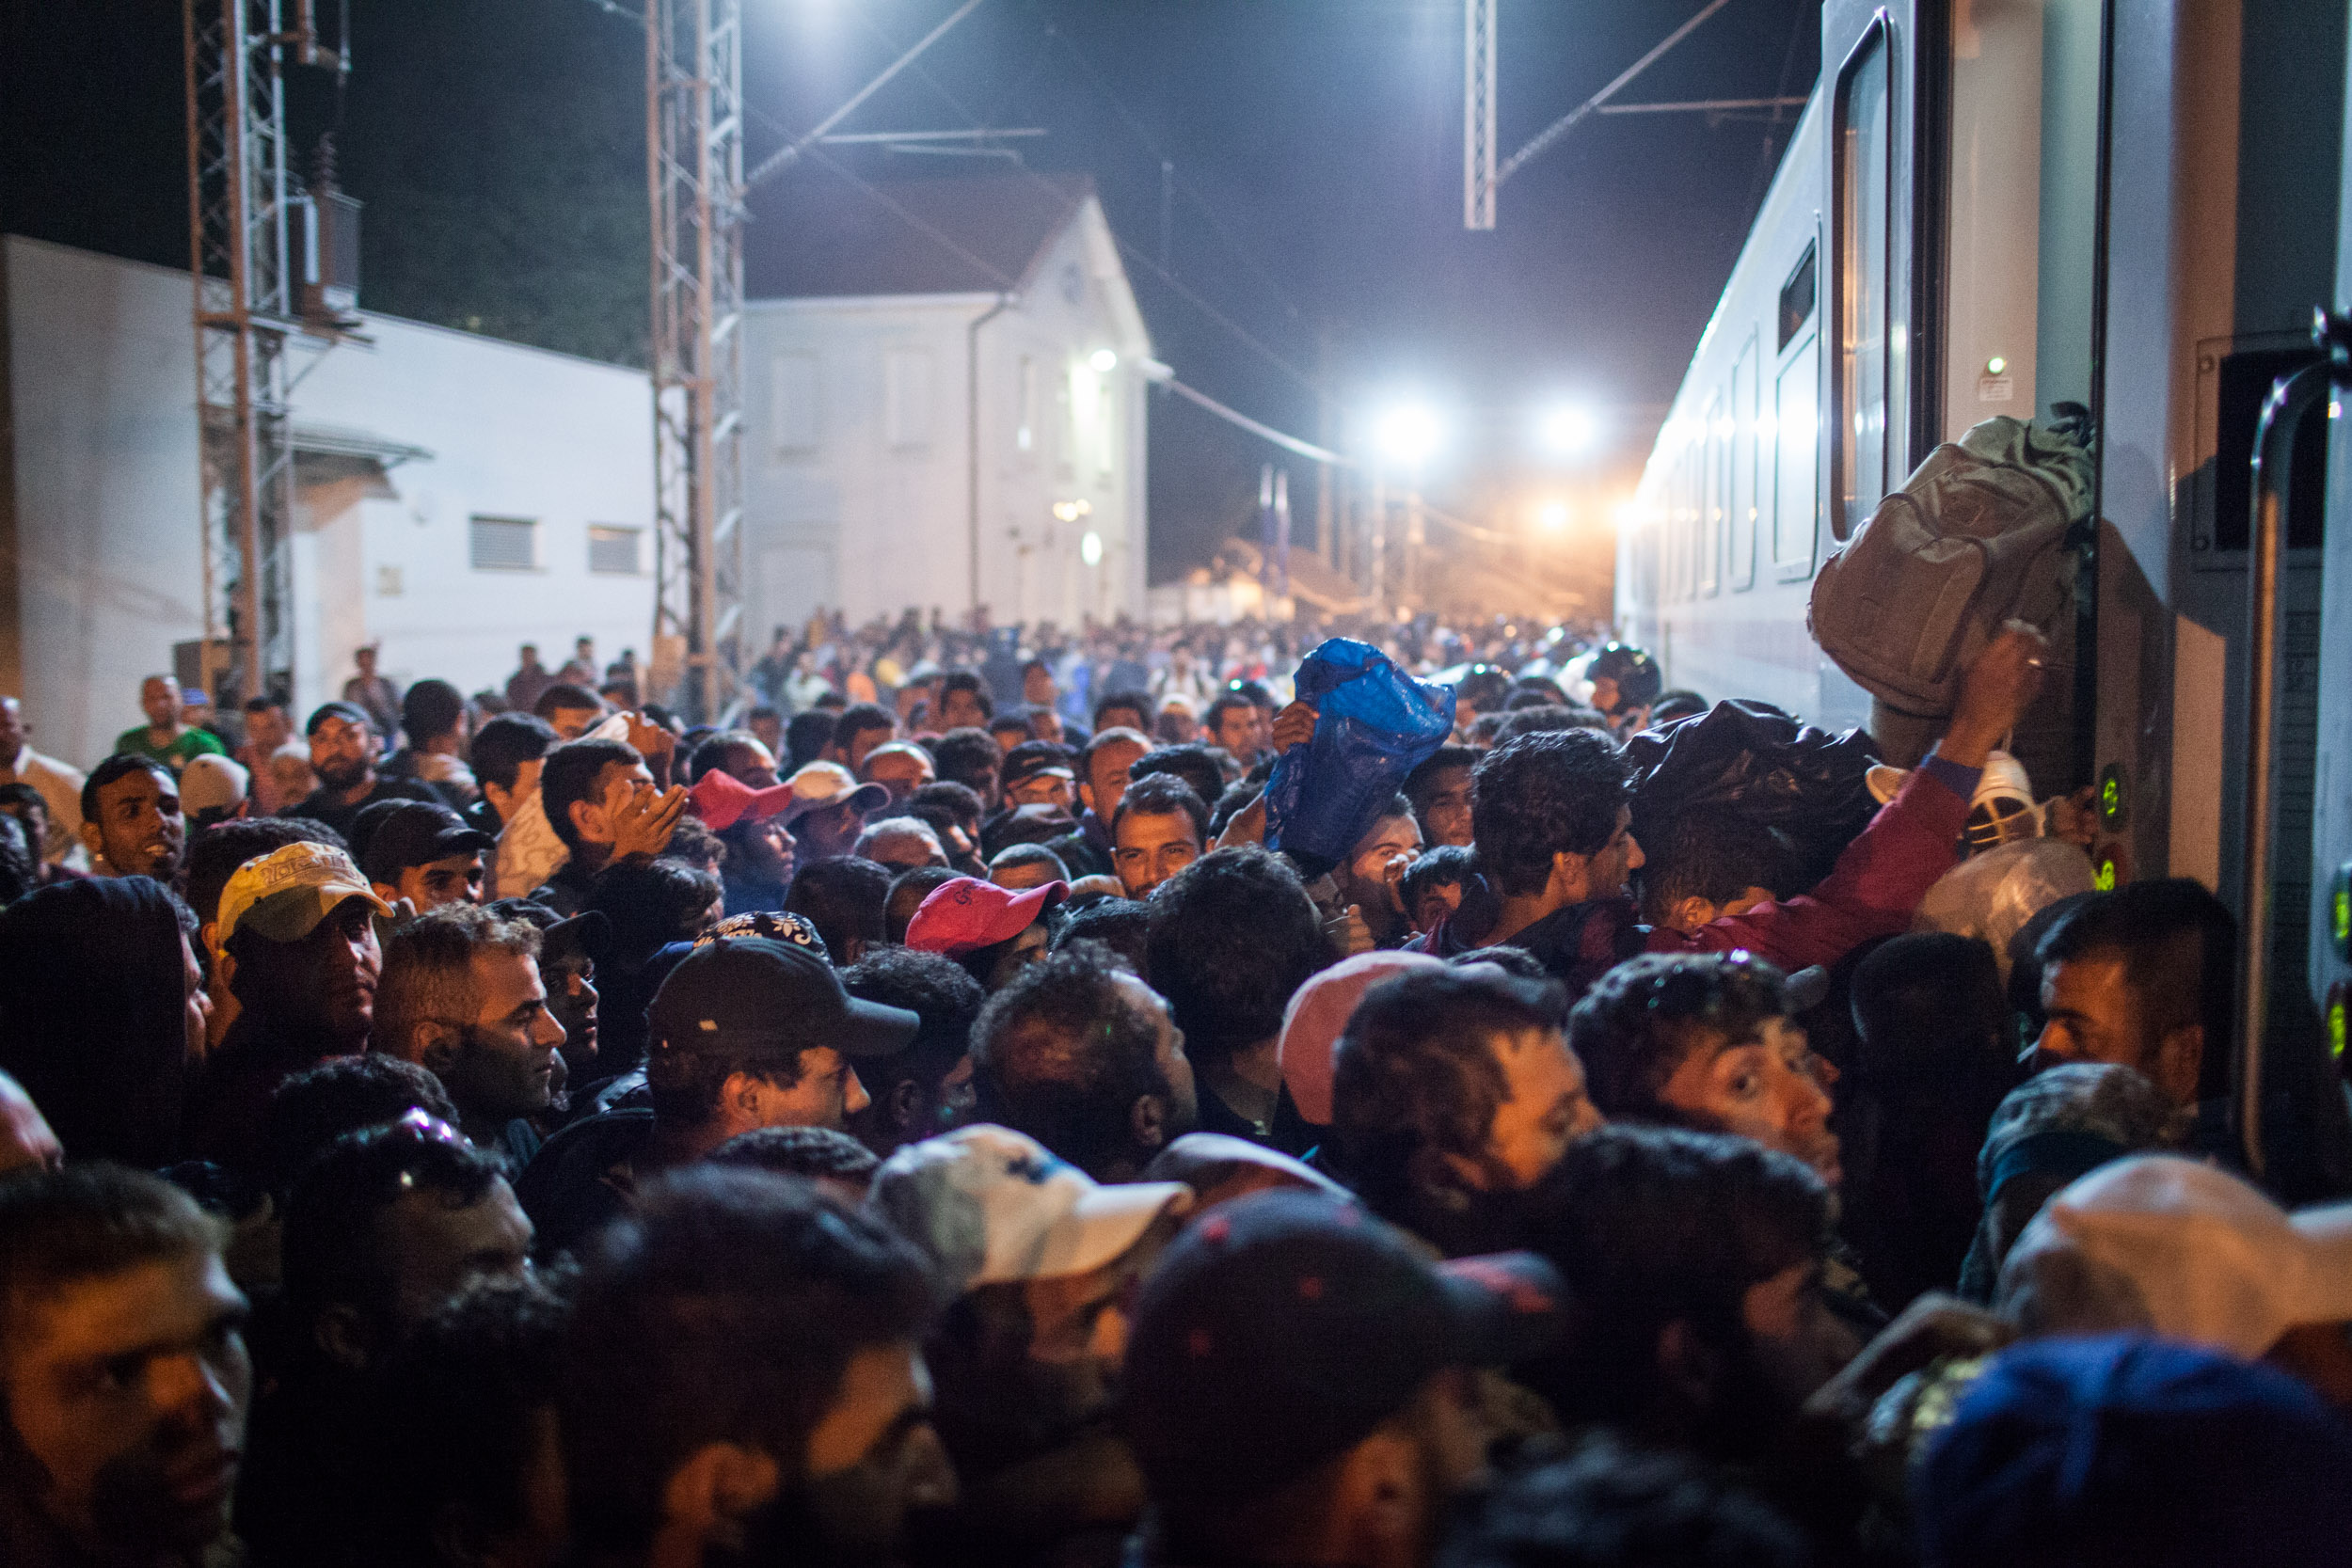 Tausende Flüchtlinge versuchen am Freitag, dem 18.9.2015 einen Zug nach Zagreb zu erreichen. Ab dem 15.9.2015 erreichten tausende Flüchtlinge Kroatien auf ihrem Weg nach Zentraleuropa, die kroatische Polizei war damit völlig überfordert.